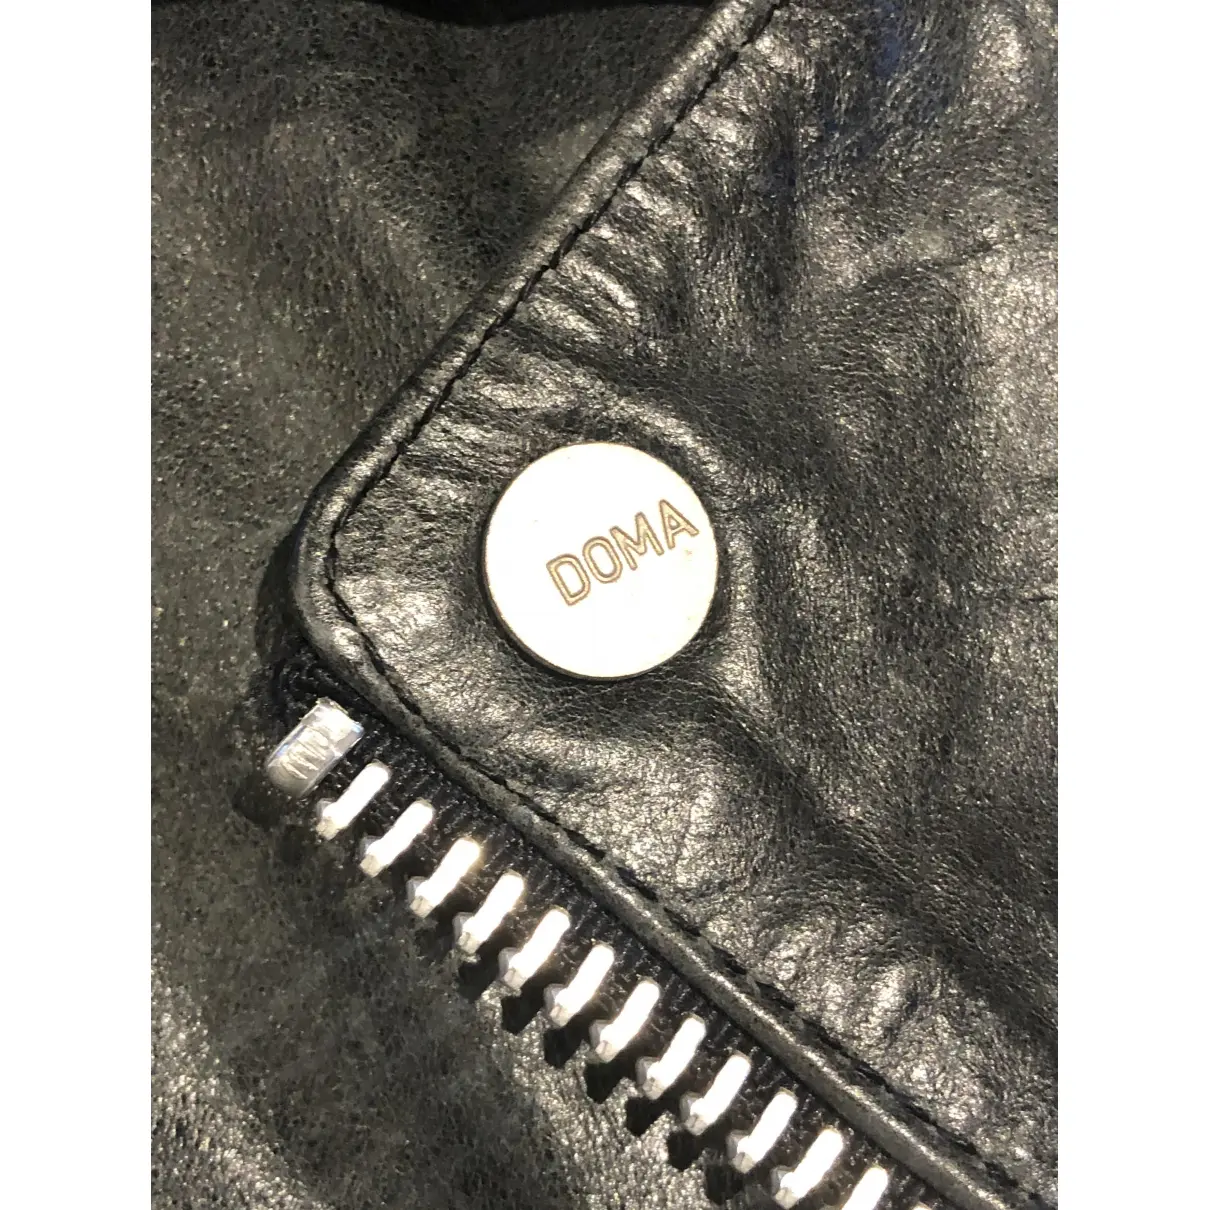 Leather jacket Doma